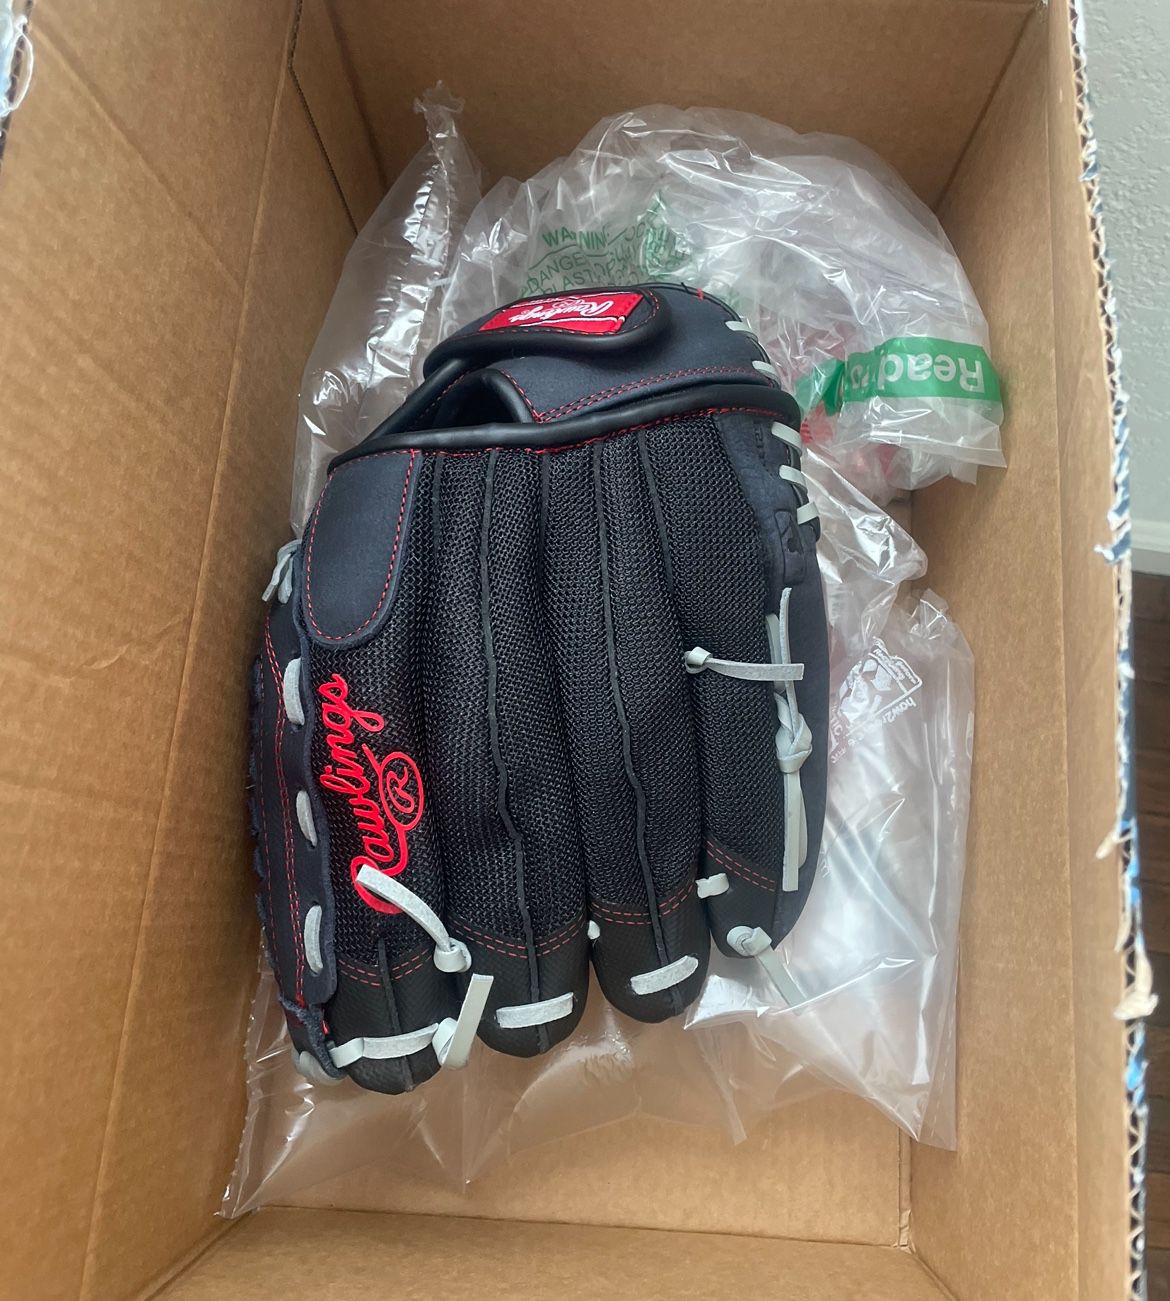 Rawlings Baseball Glove